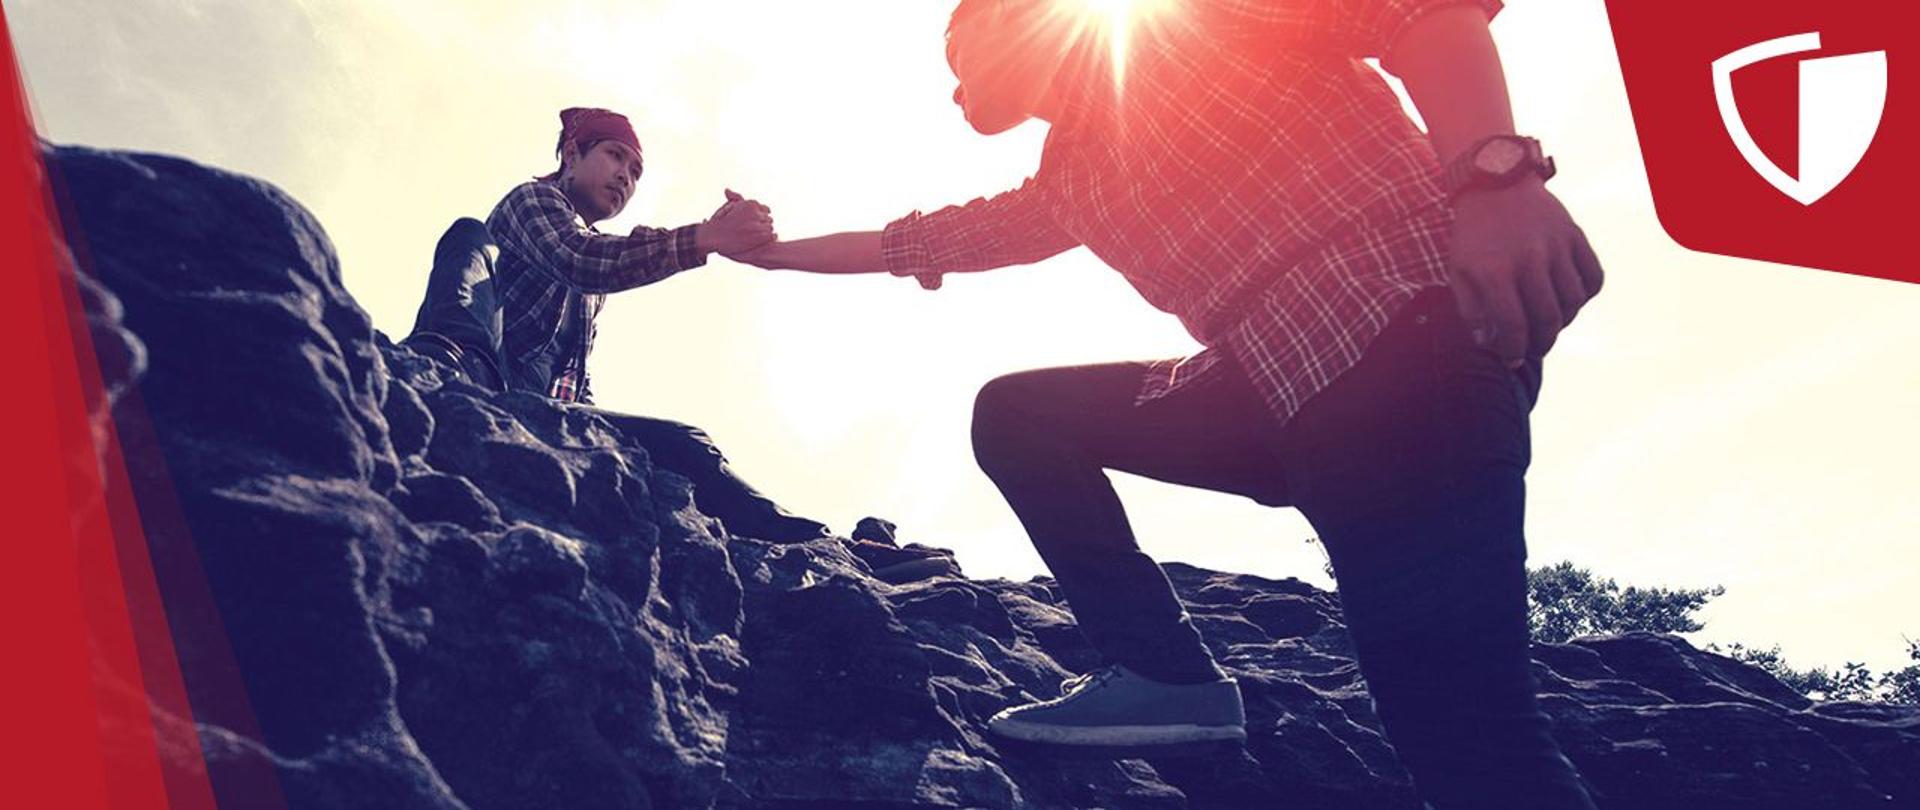 Grafika ze zdjęciem dwóch mężczyzn, jeden pomaga drugiemu wspiąć się na skały. W prawym górnym roku logo Tarczy Antykryzysowej.